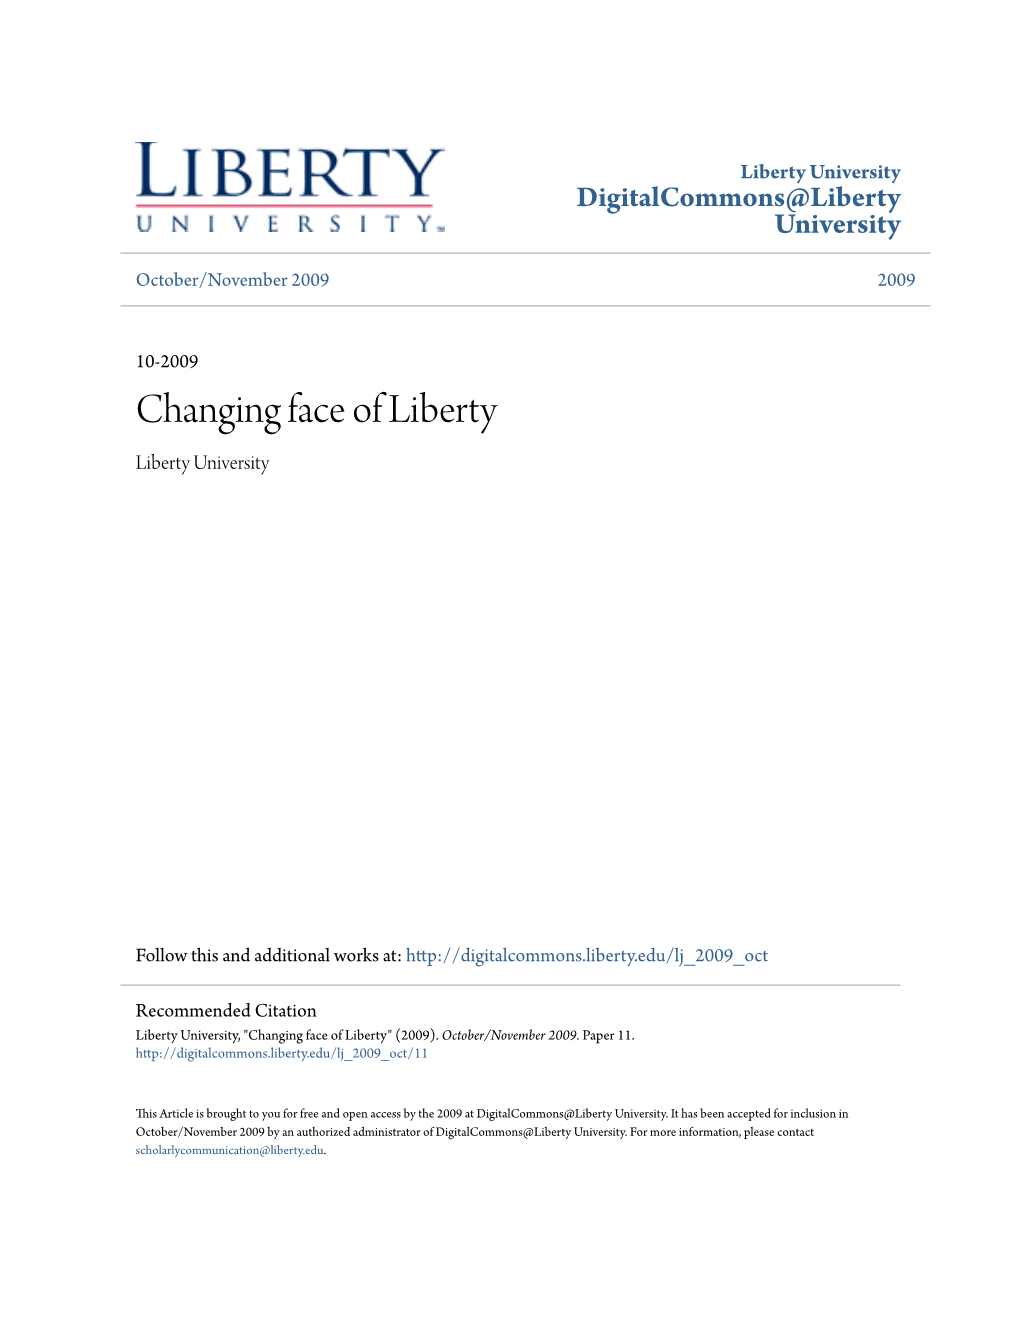 Changing Face of Liberty Liberty University